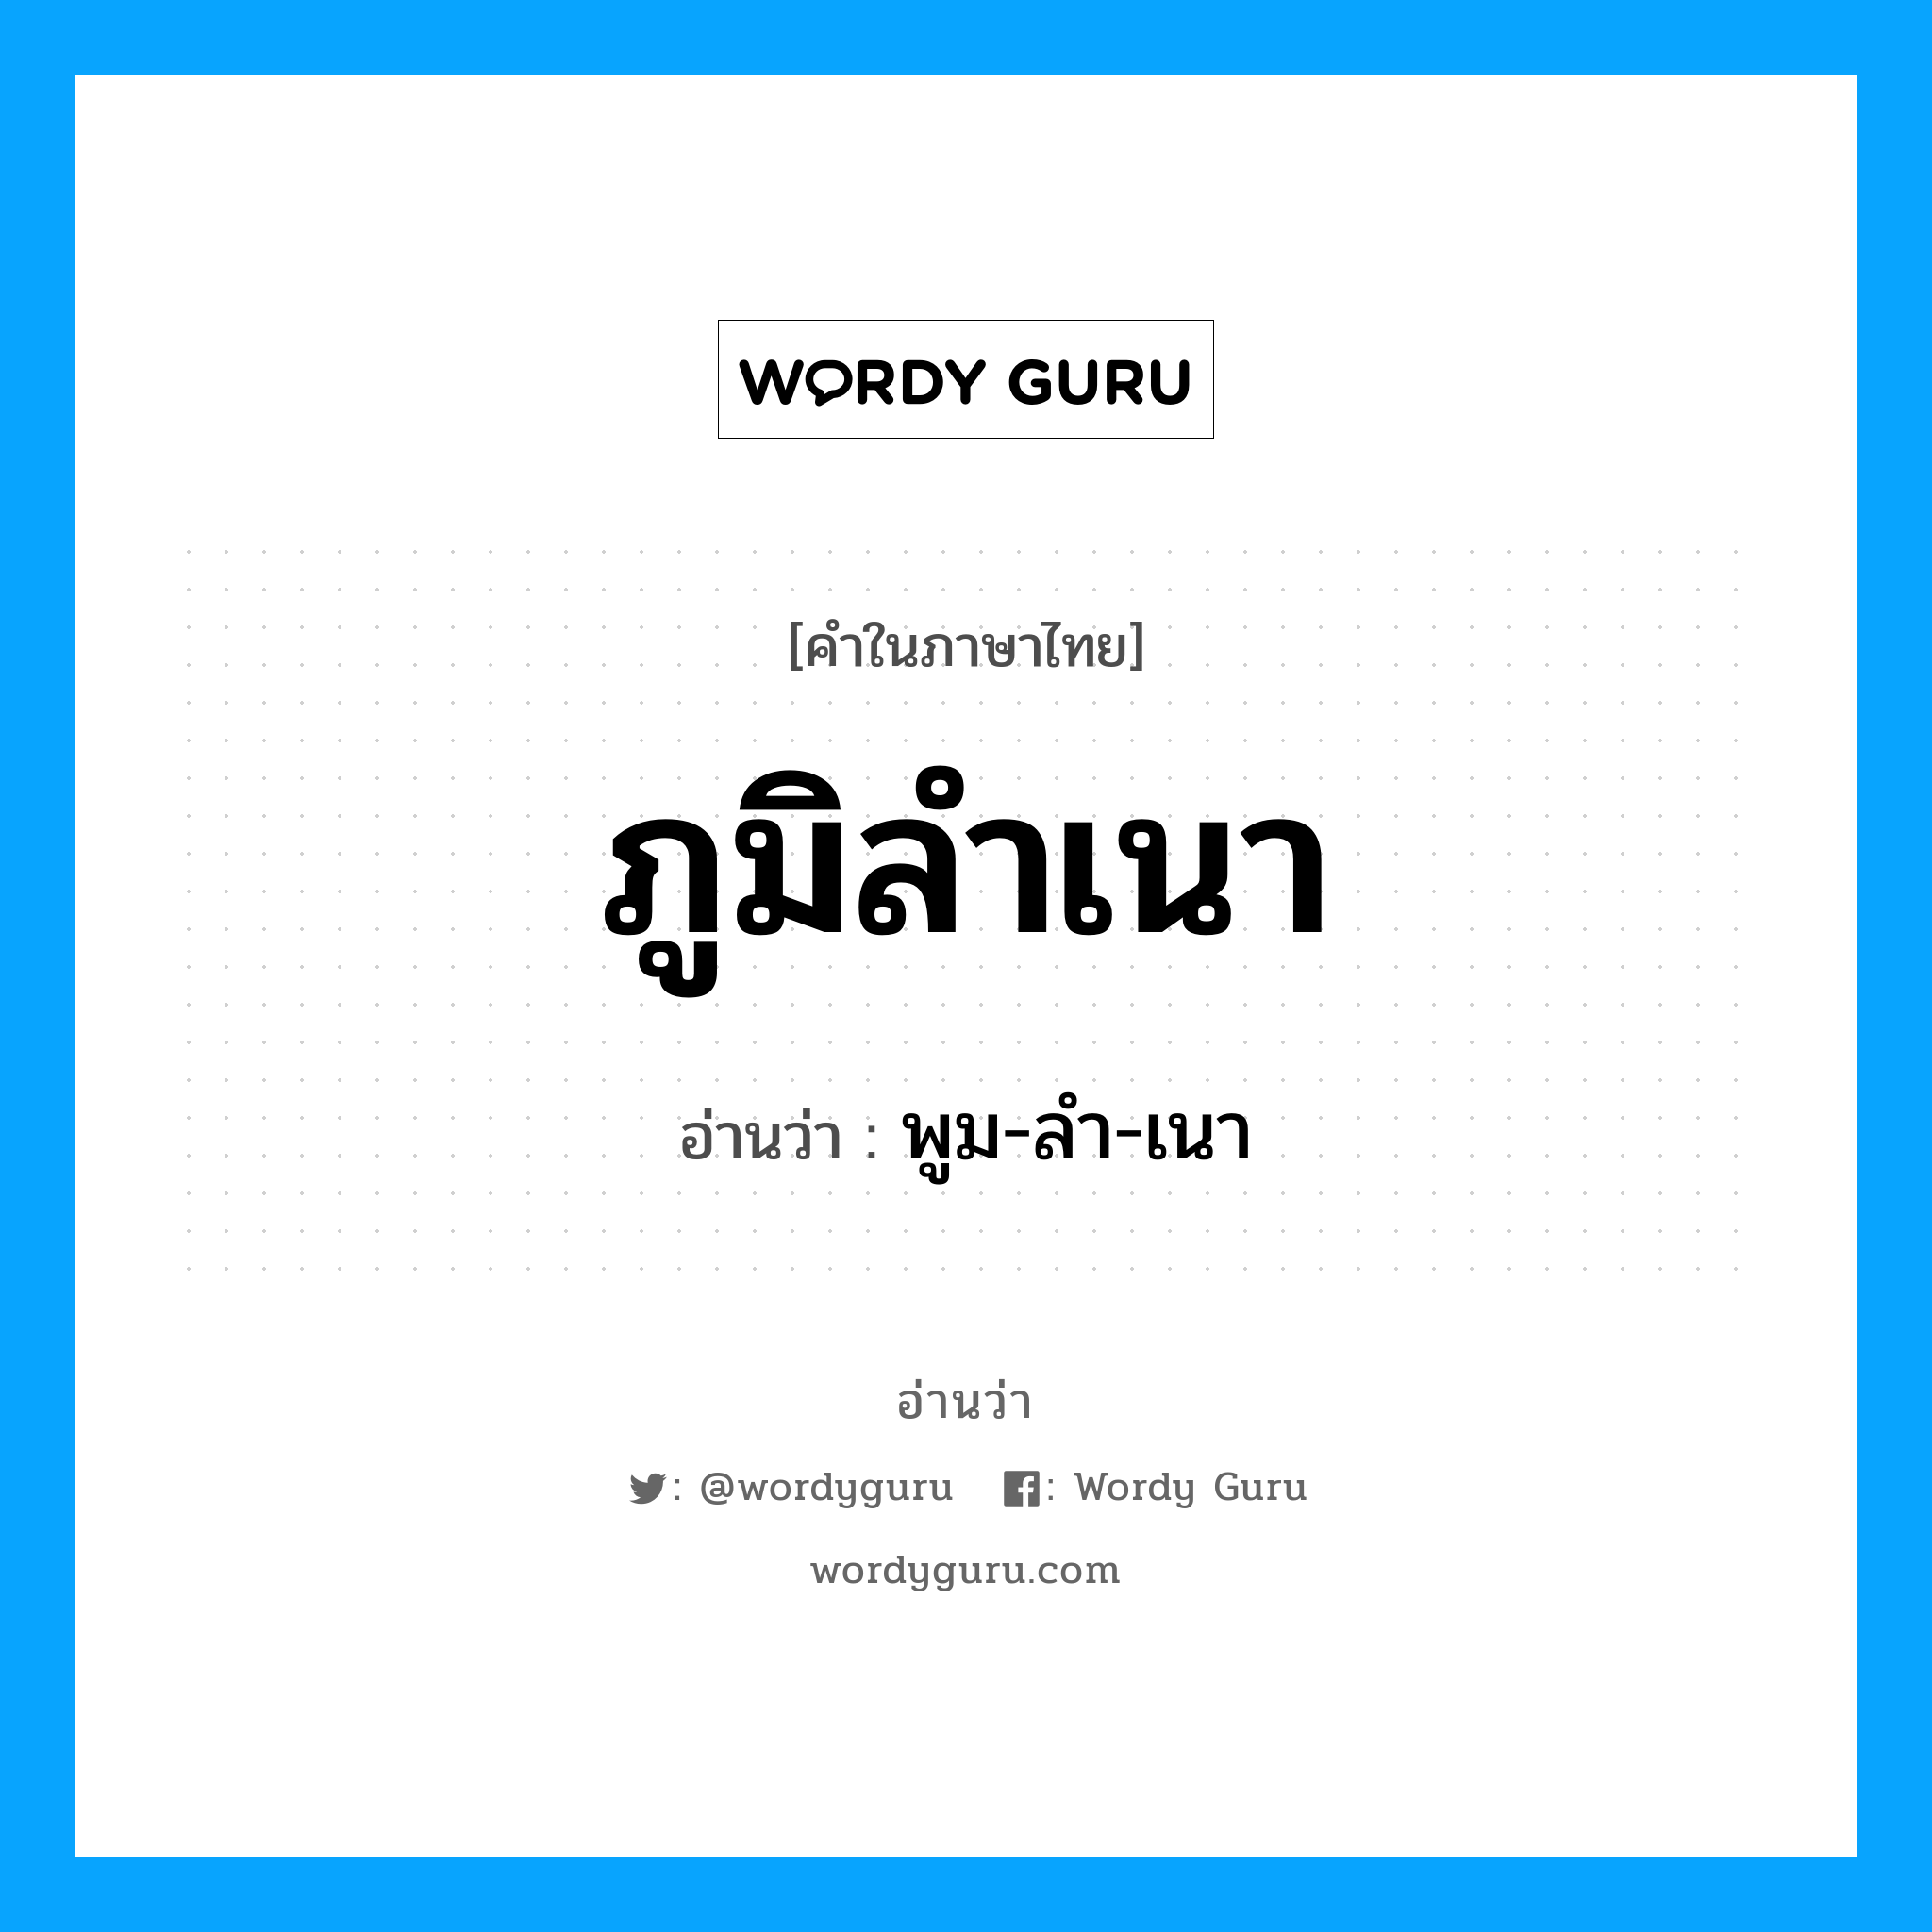 พูม-ลำ-เนา เป็นคำอ่านของคำไหน?, คำในภาษาไทย พูม-ลำ-เนา อ่านว่า ภูมิลำเนา